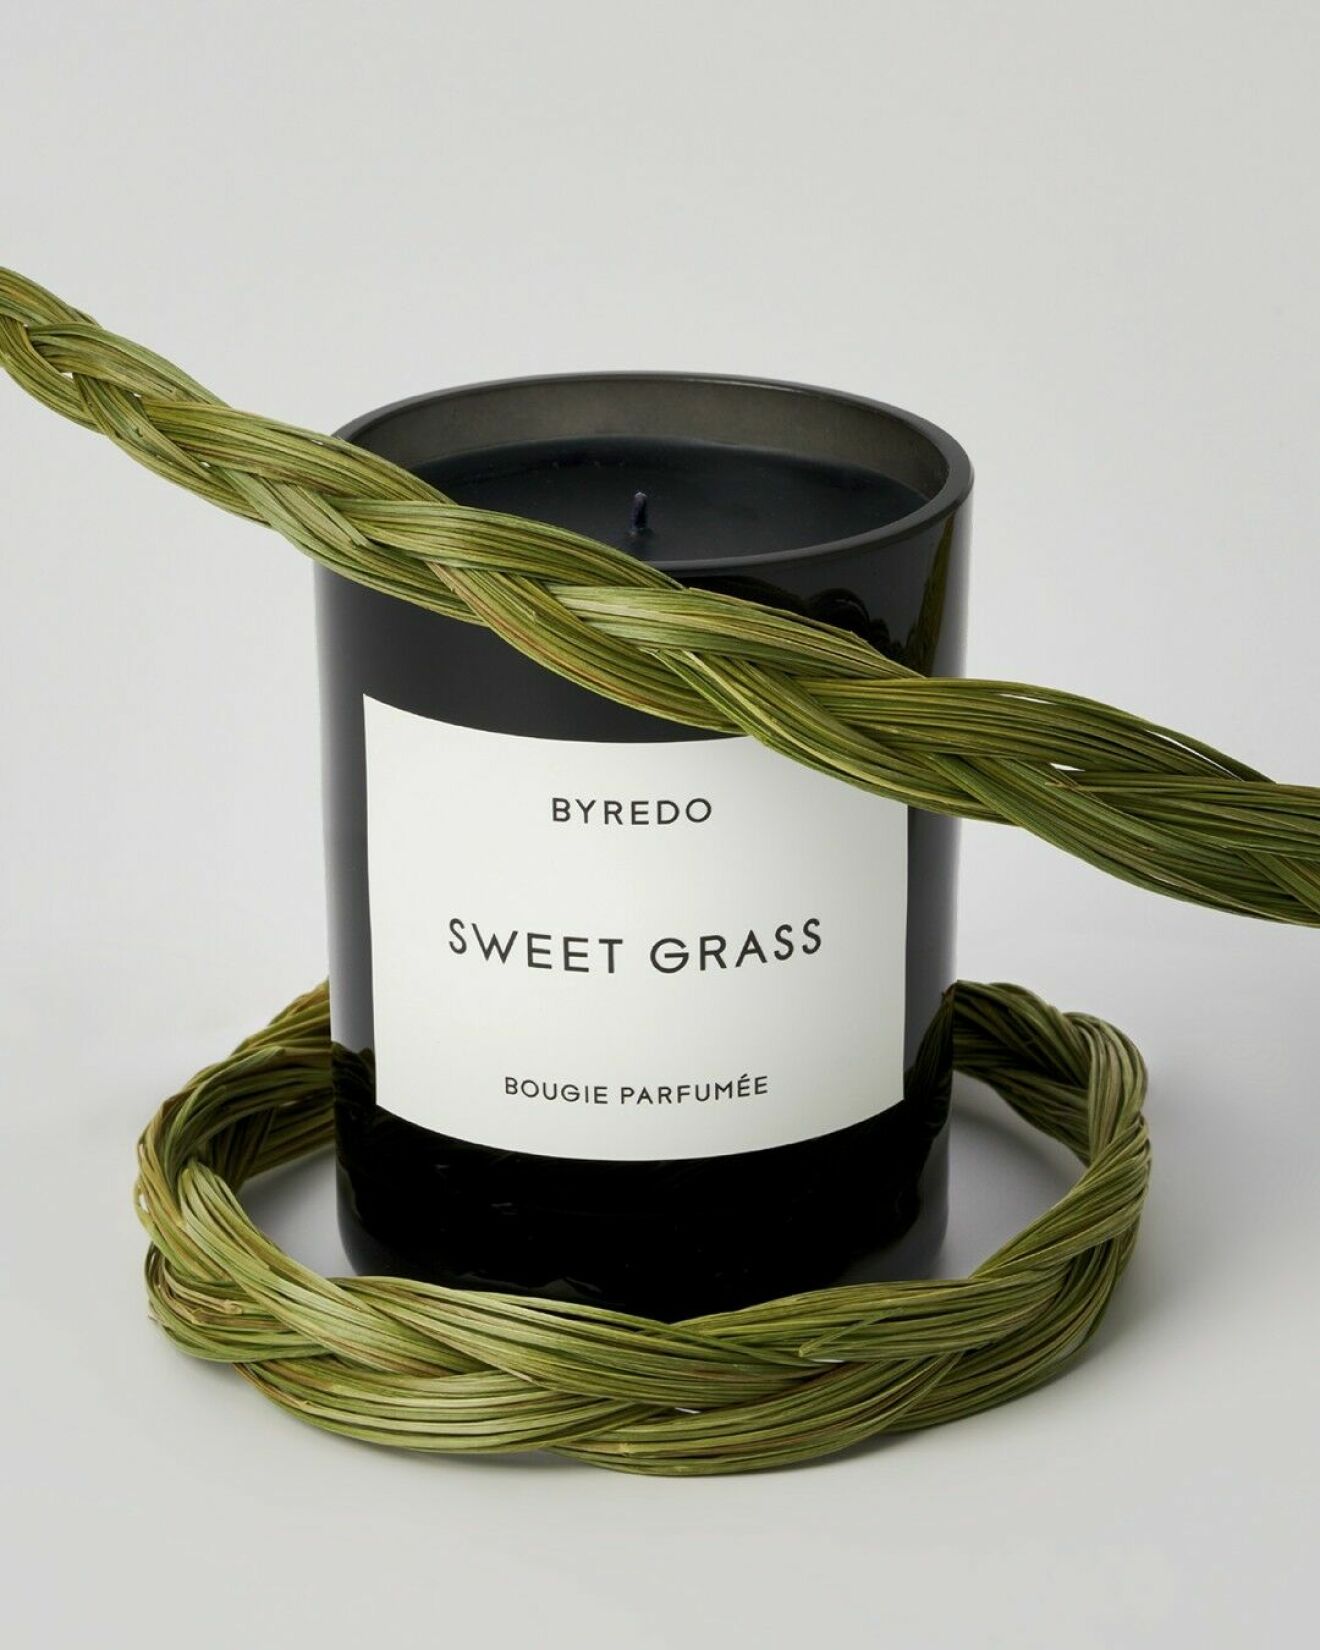 Doftljus från Byredo, Sweet grass.